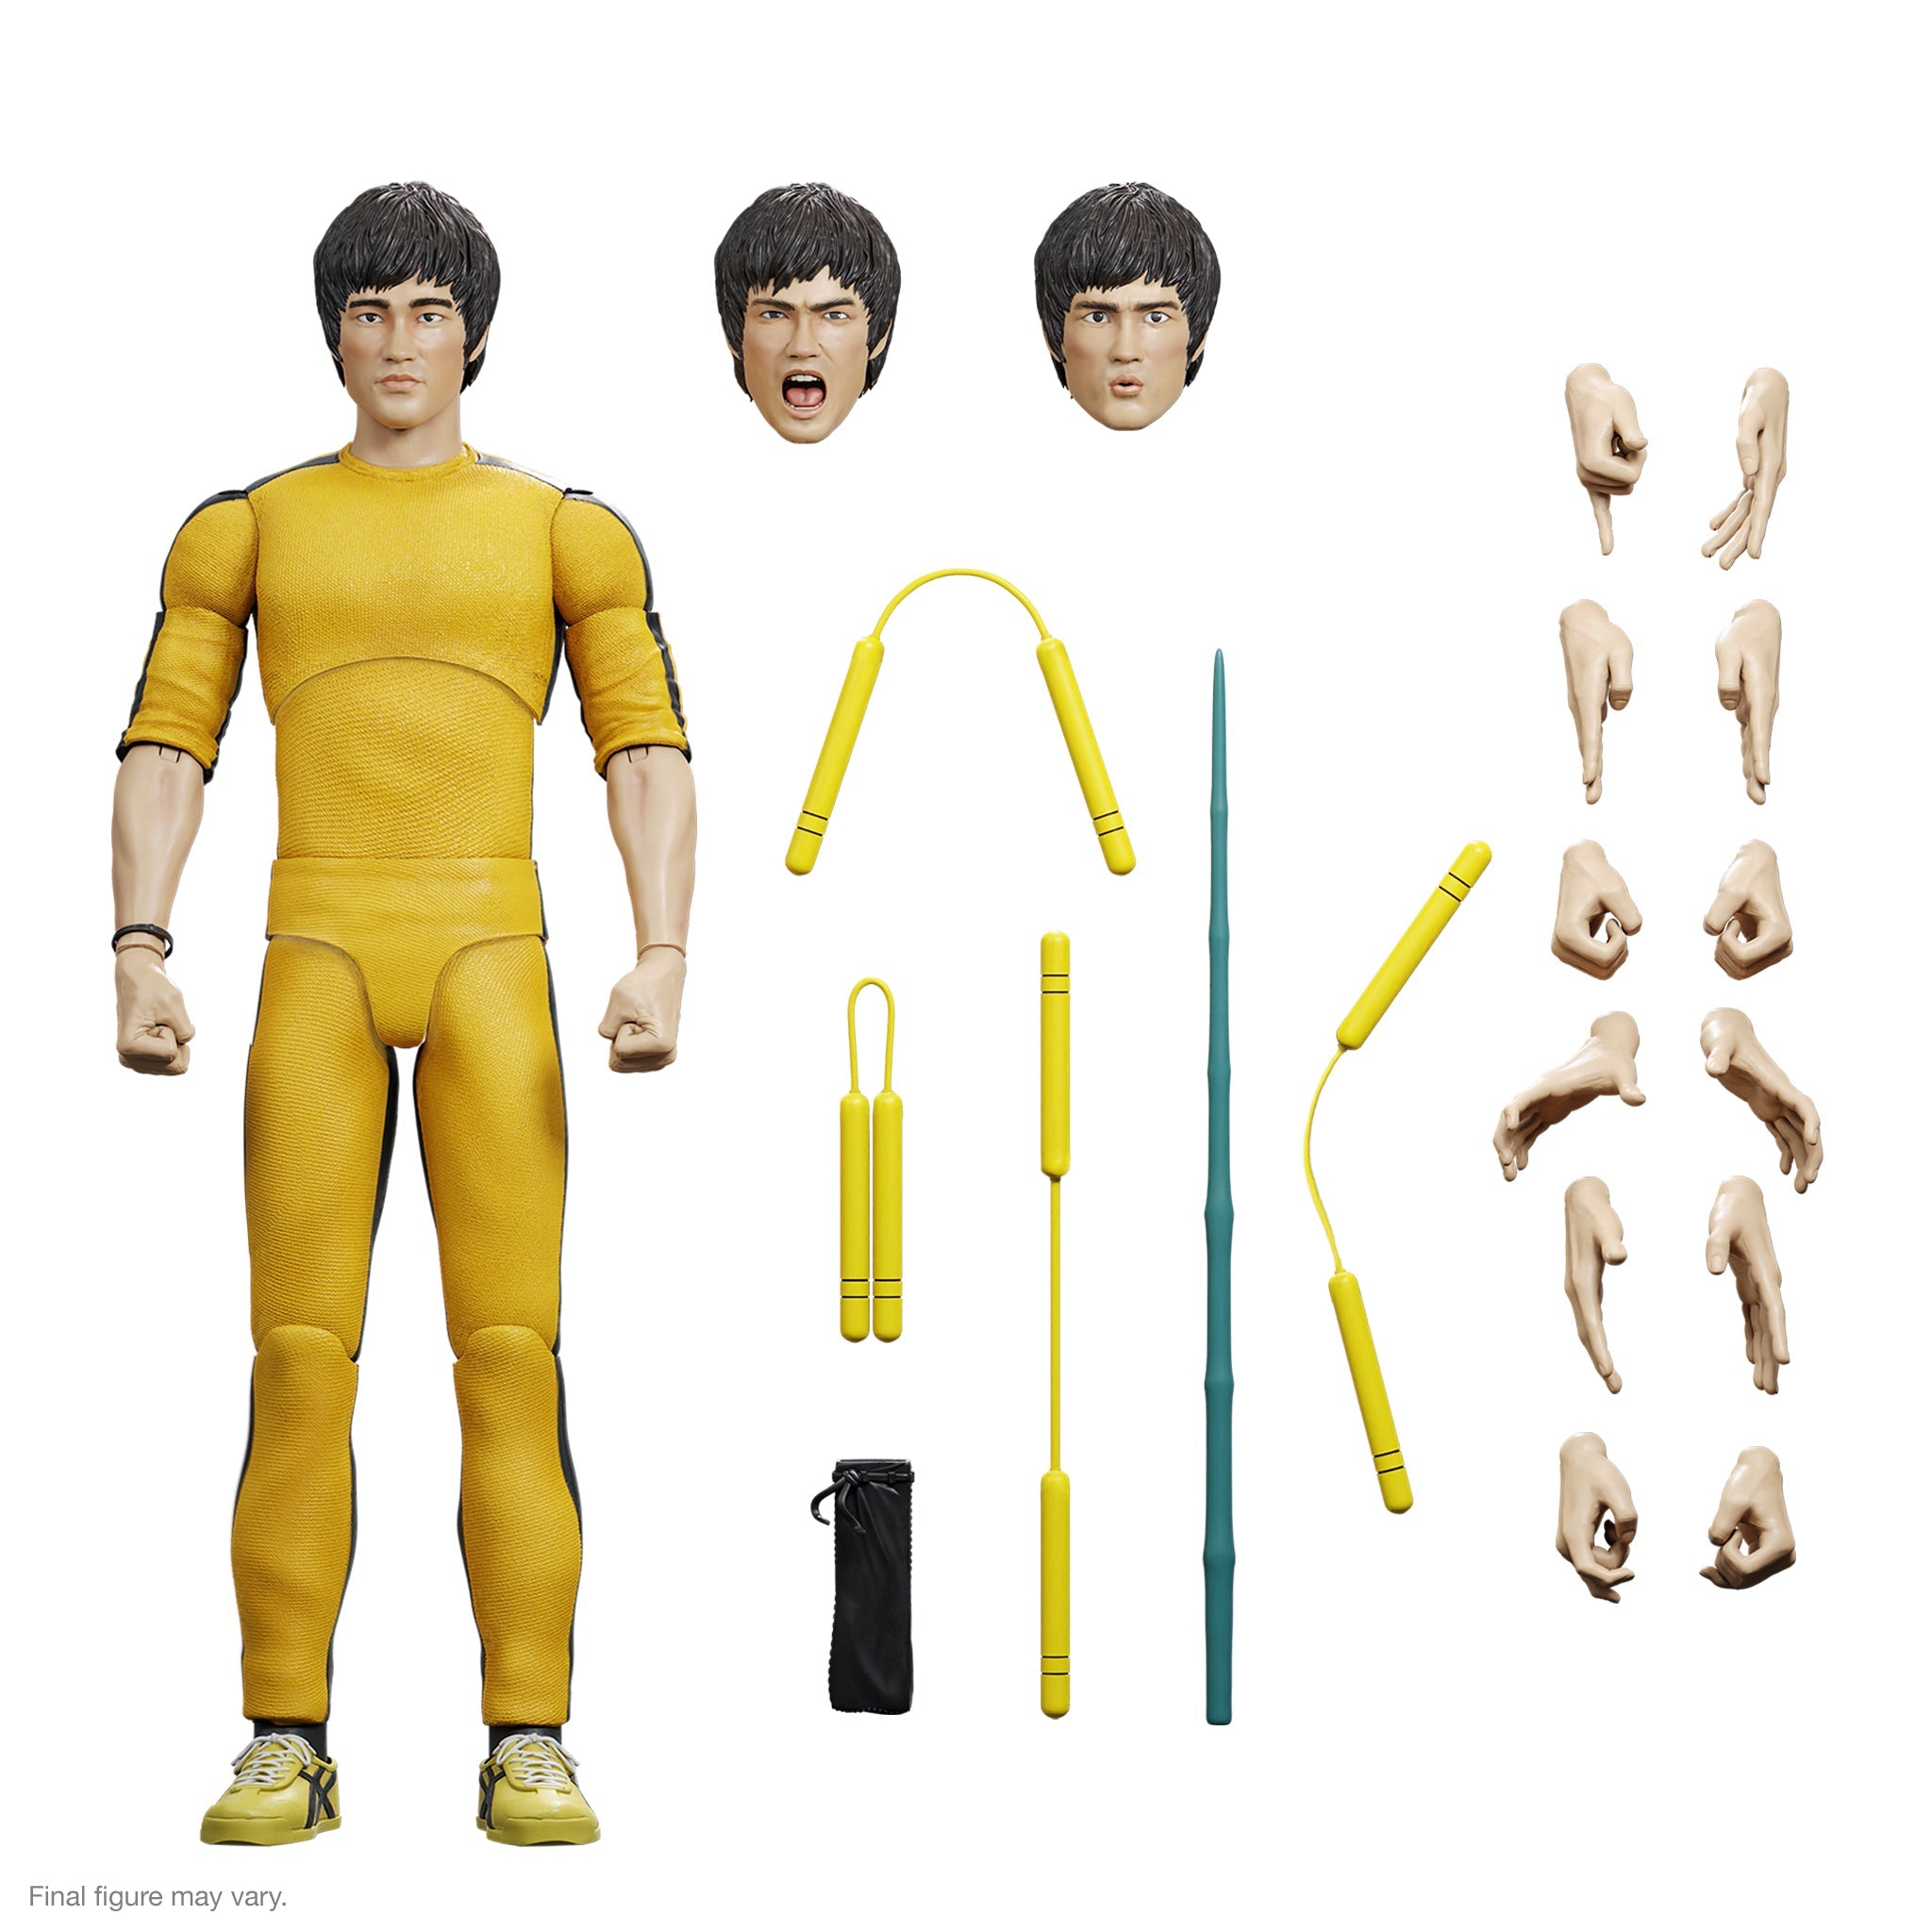 Super7 Ultimates: Bruce Lee - Bruce The Challenger